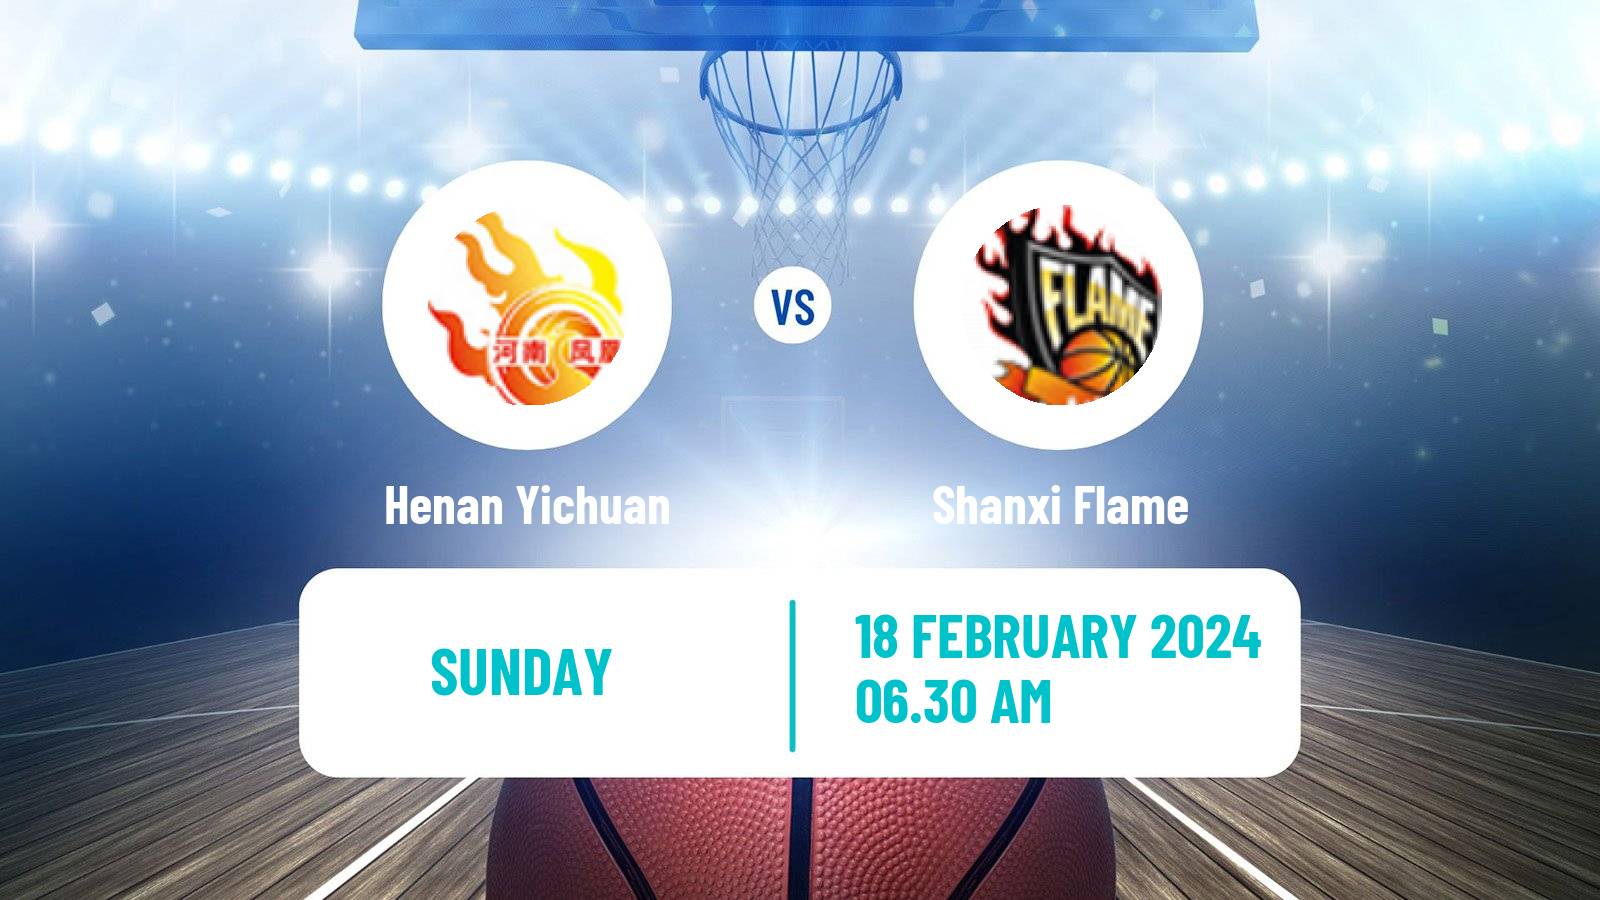 Basketball WCBA Henan Yichuan - Shanxi Flame